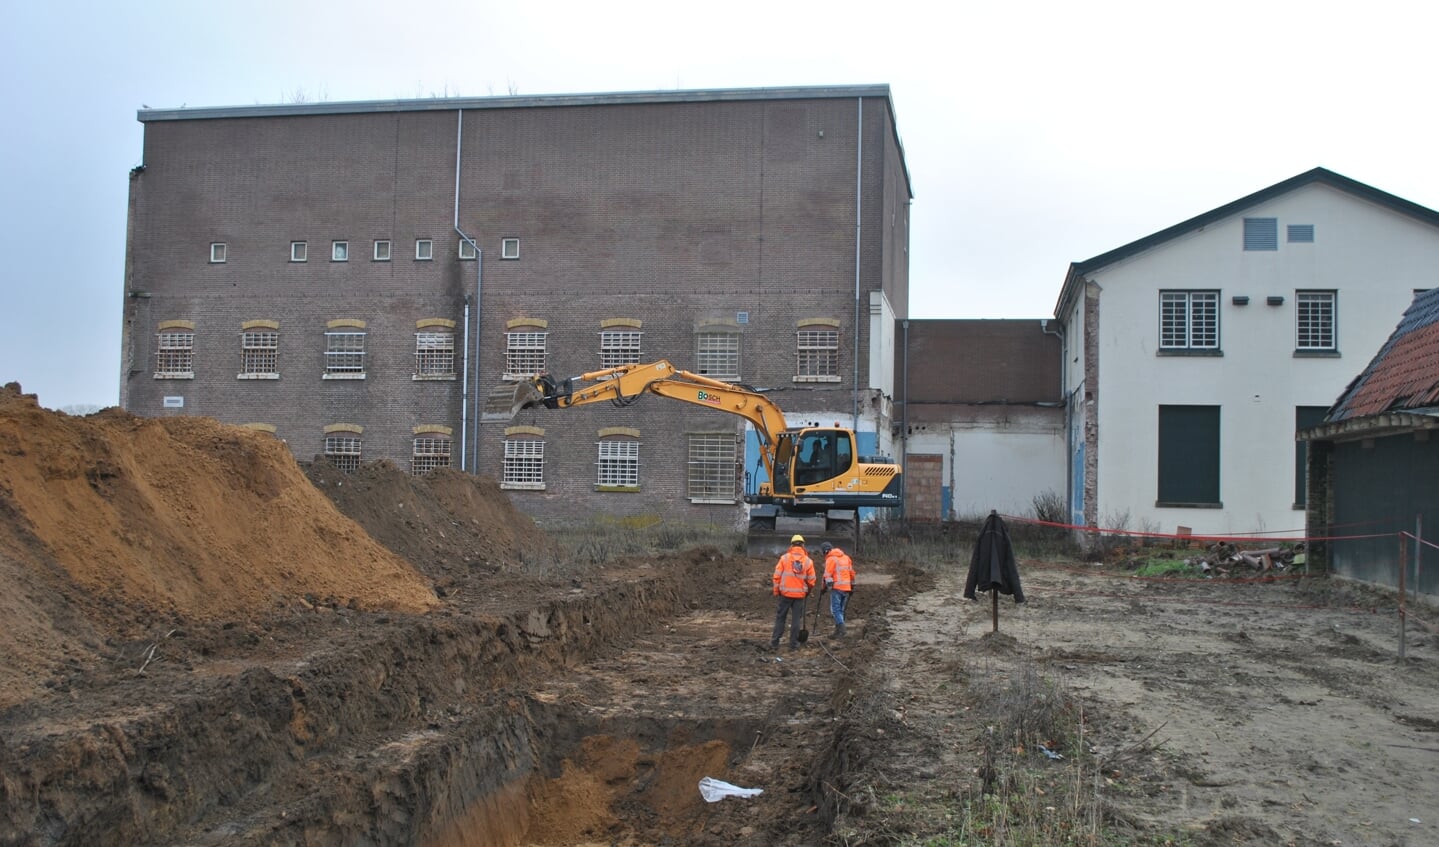 Archeologen aan het werk in het veld op het terrein van de voormalige jeugdgevangenis. Foto Erfgoedcentrum Zutphen